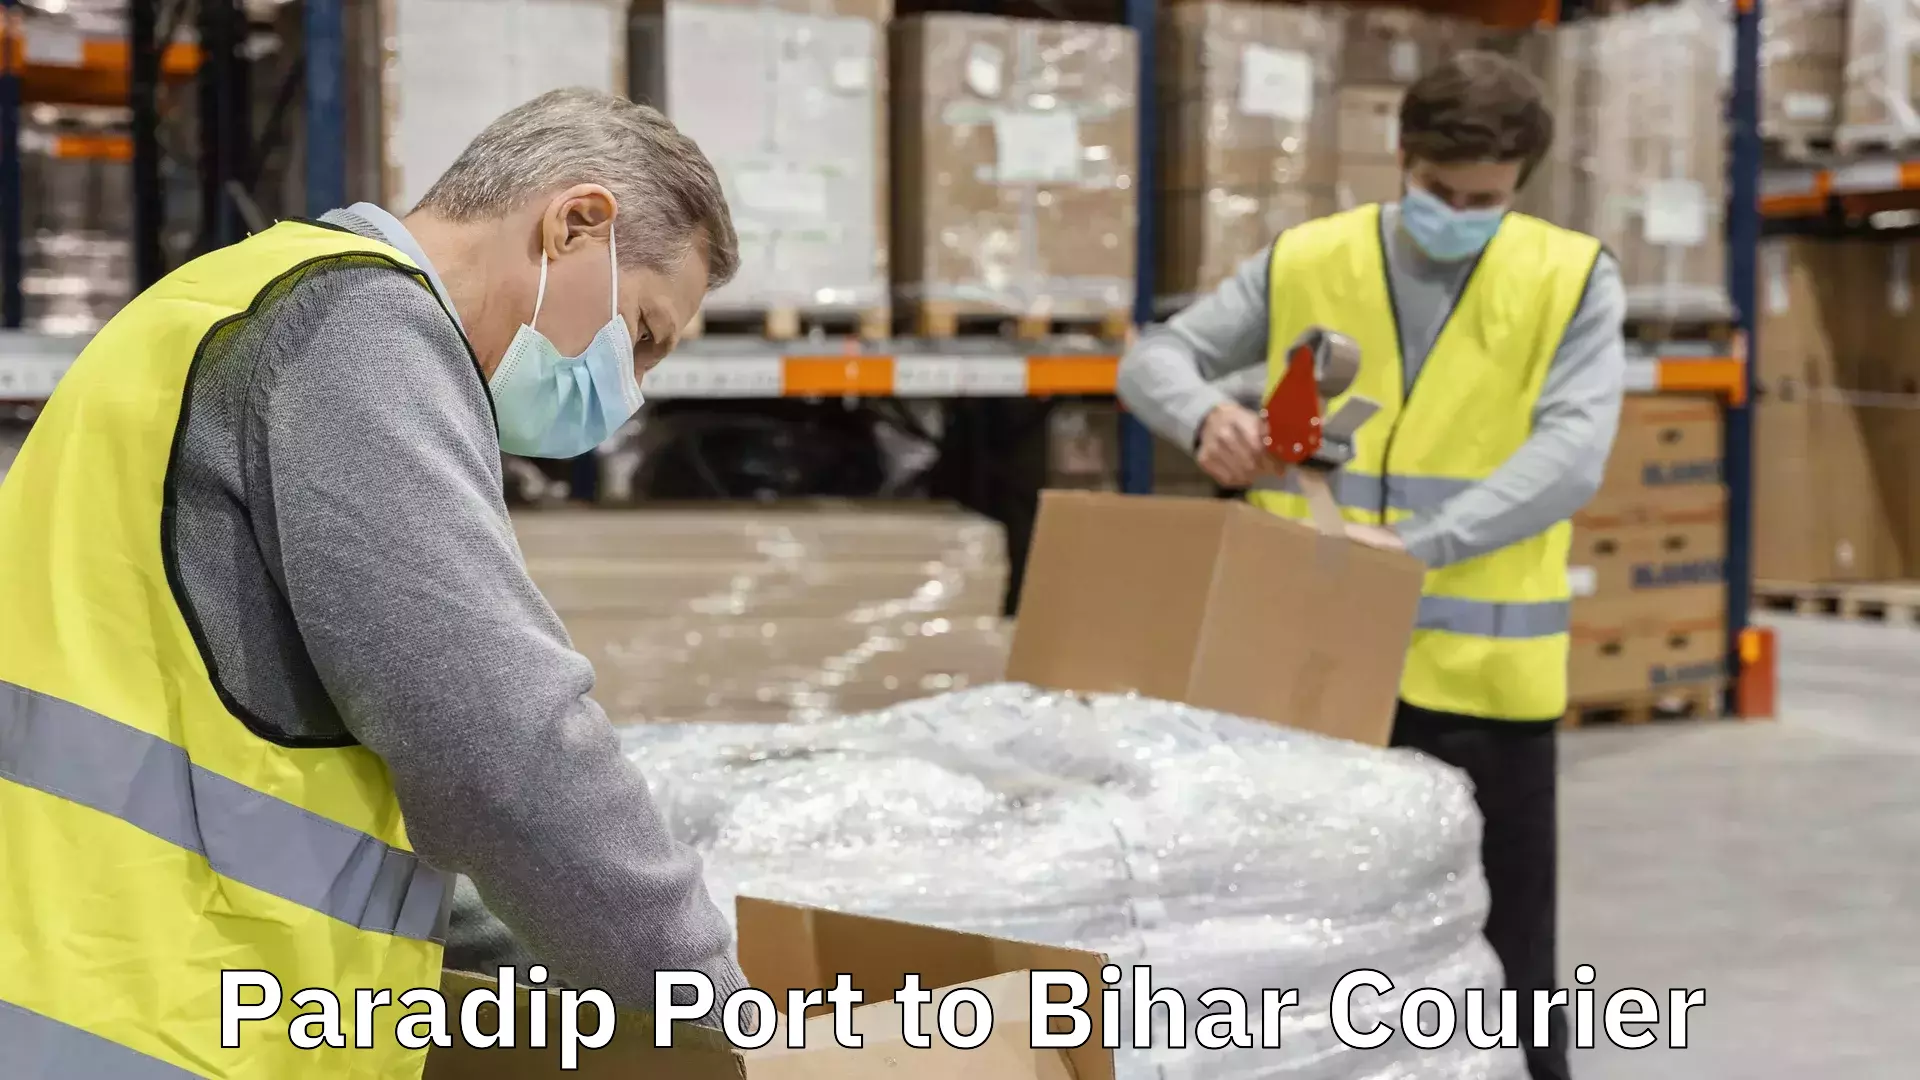 Versatile courier offerings Paradip Port to Bihar